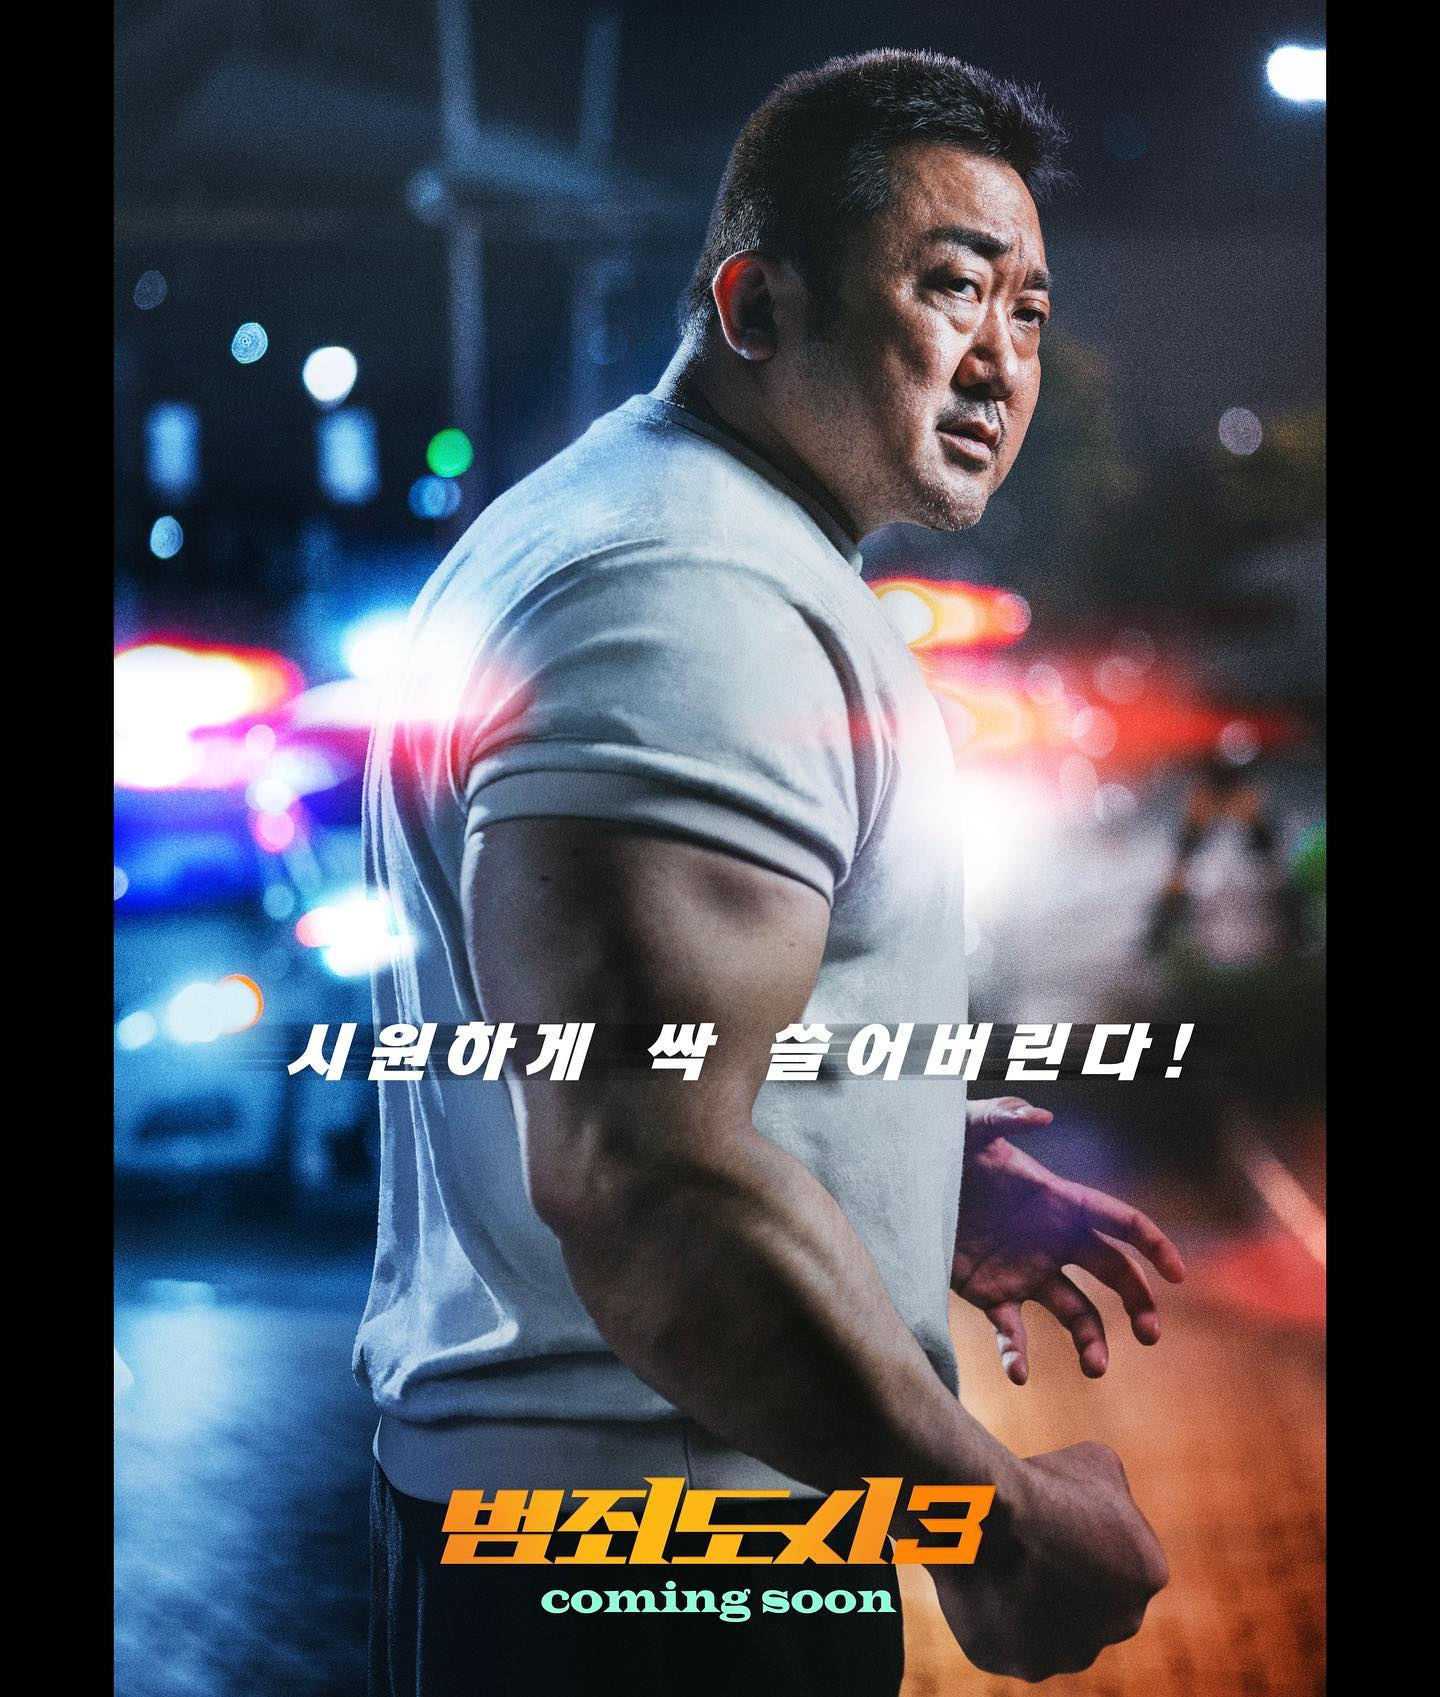 上来就是一巴掌 马东锡《犯罪都市3》先导预告 5.31韩国上映